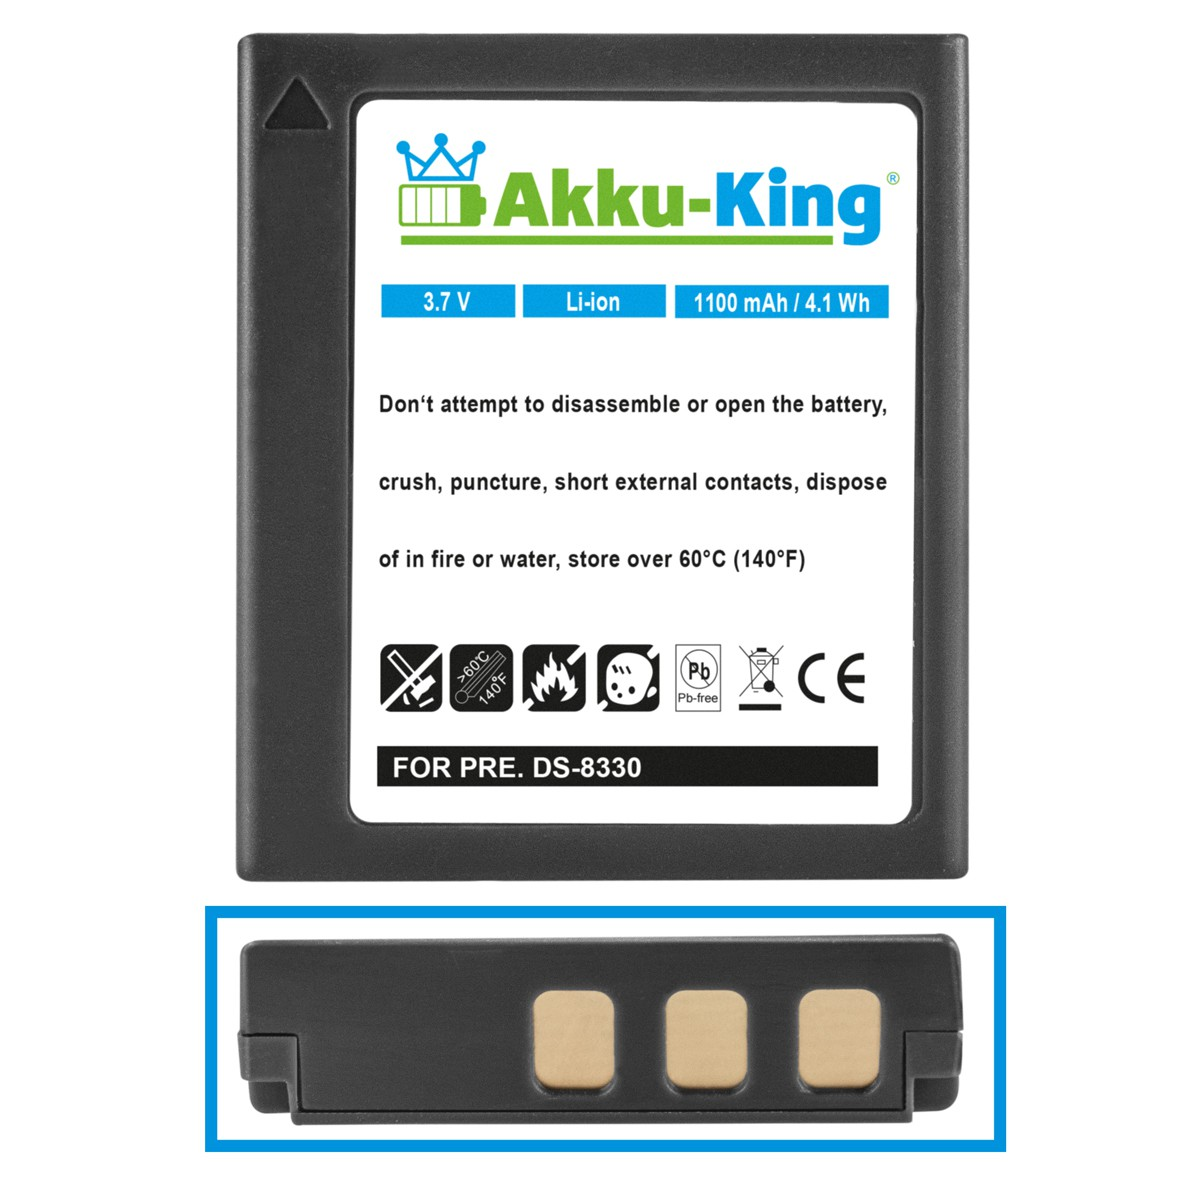 AKKU-KING Akku kompatibel DC-8300 Li-Ion mit 1100mAh Medion Kamera-Akku, Volt, 3.7